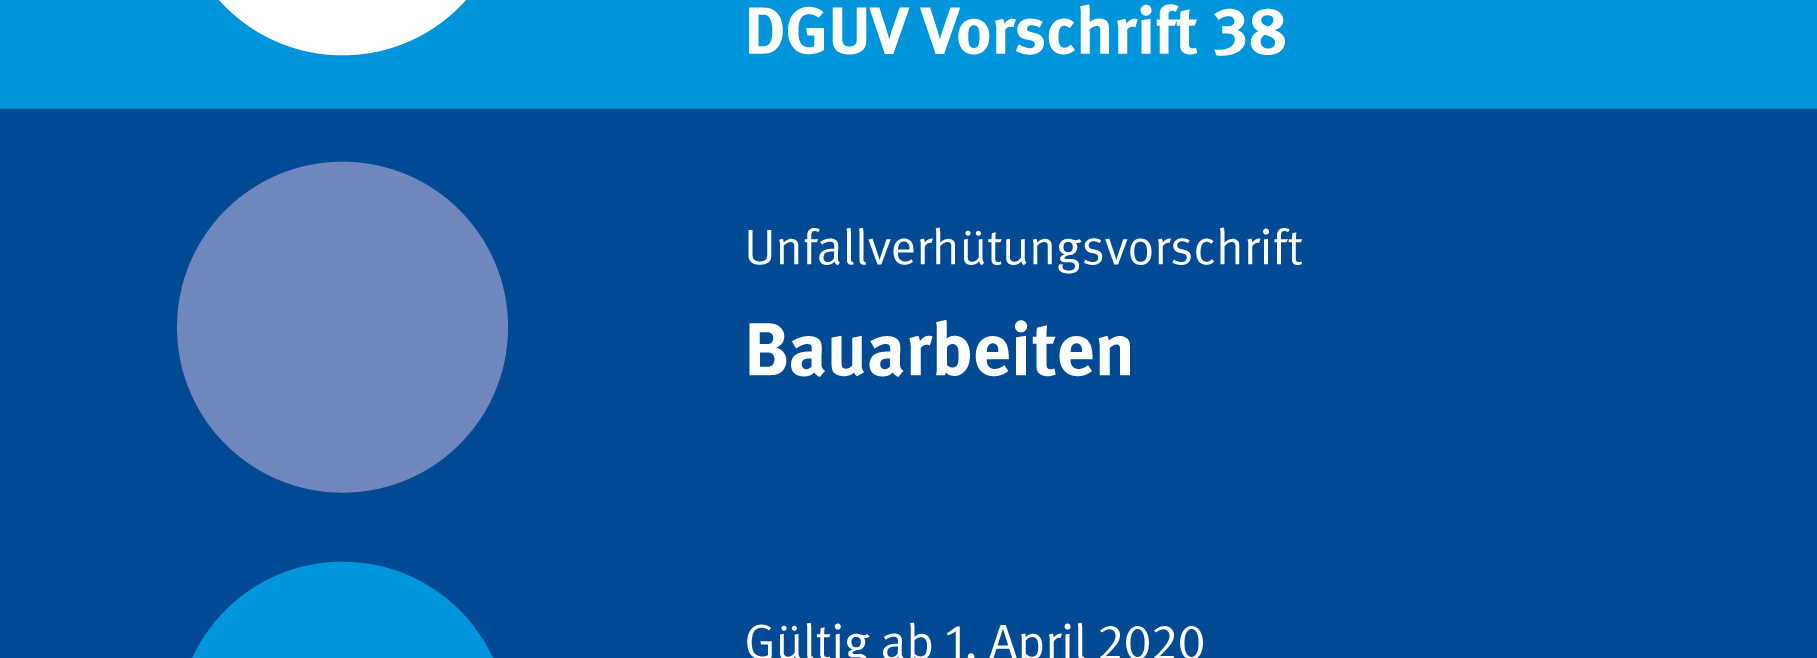 Titelbild der DGUV Vorschrift 38: Bauarbeiten